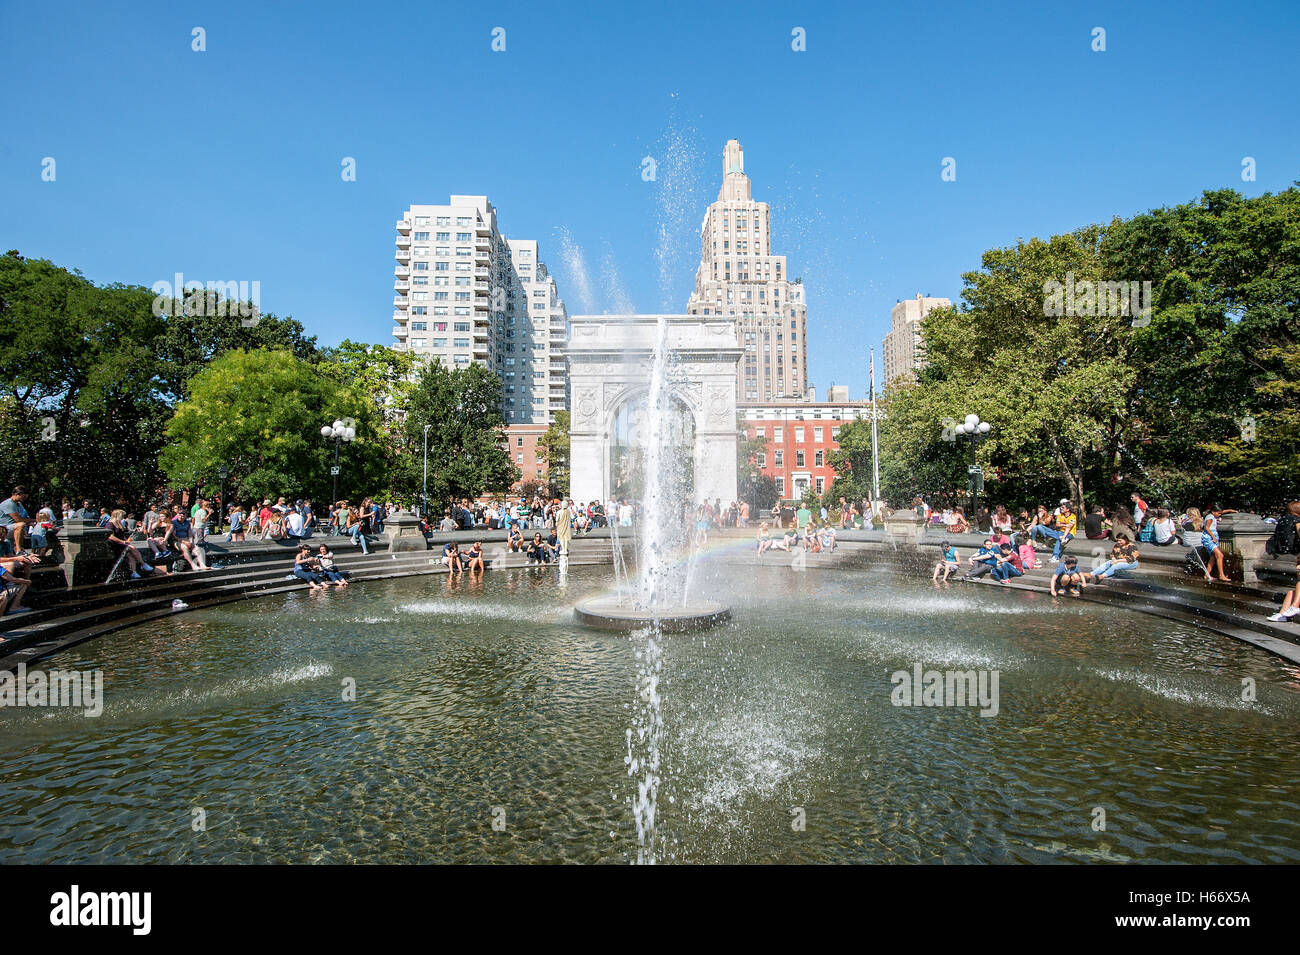 Washington Square Park tra il Greenwich Village e East Village, con fontana centrale, Washington Square Arch, Manhattan, New York Foto Stock